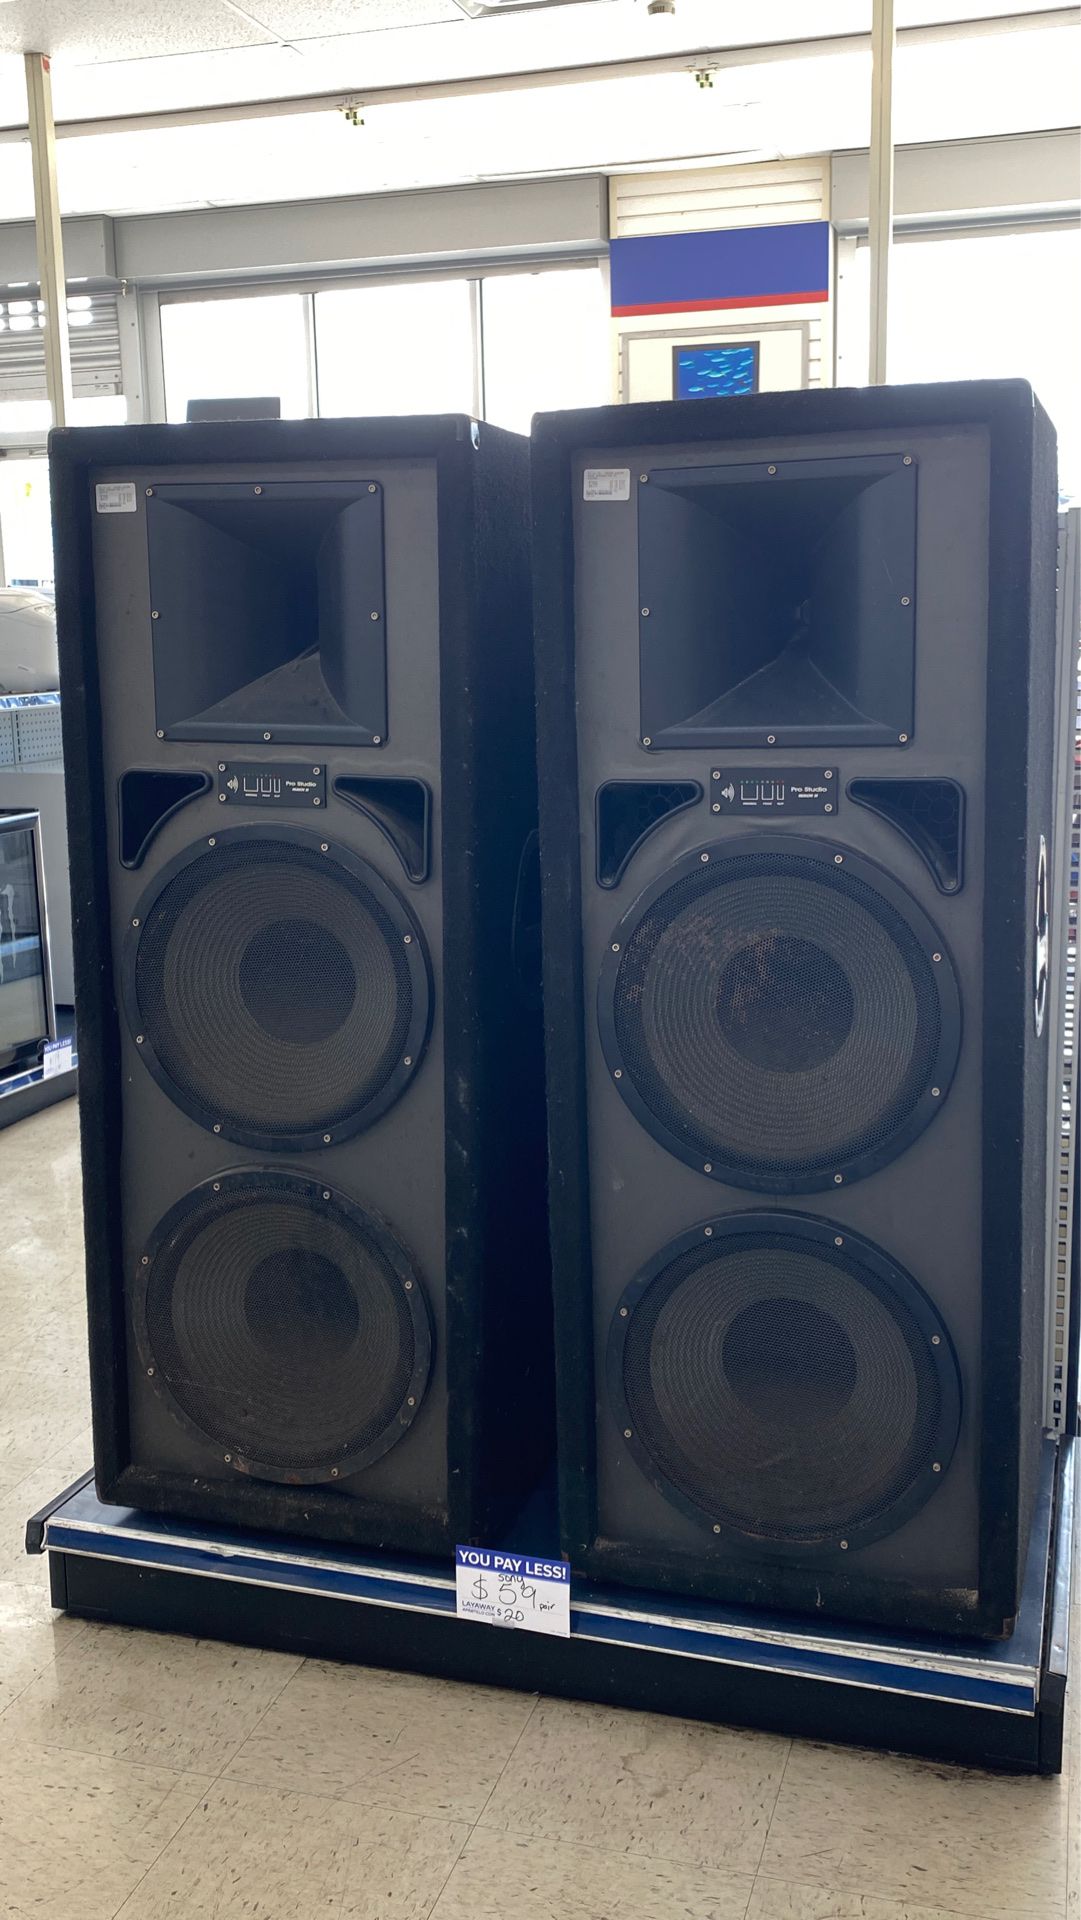 Pro audio pair of speakers